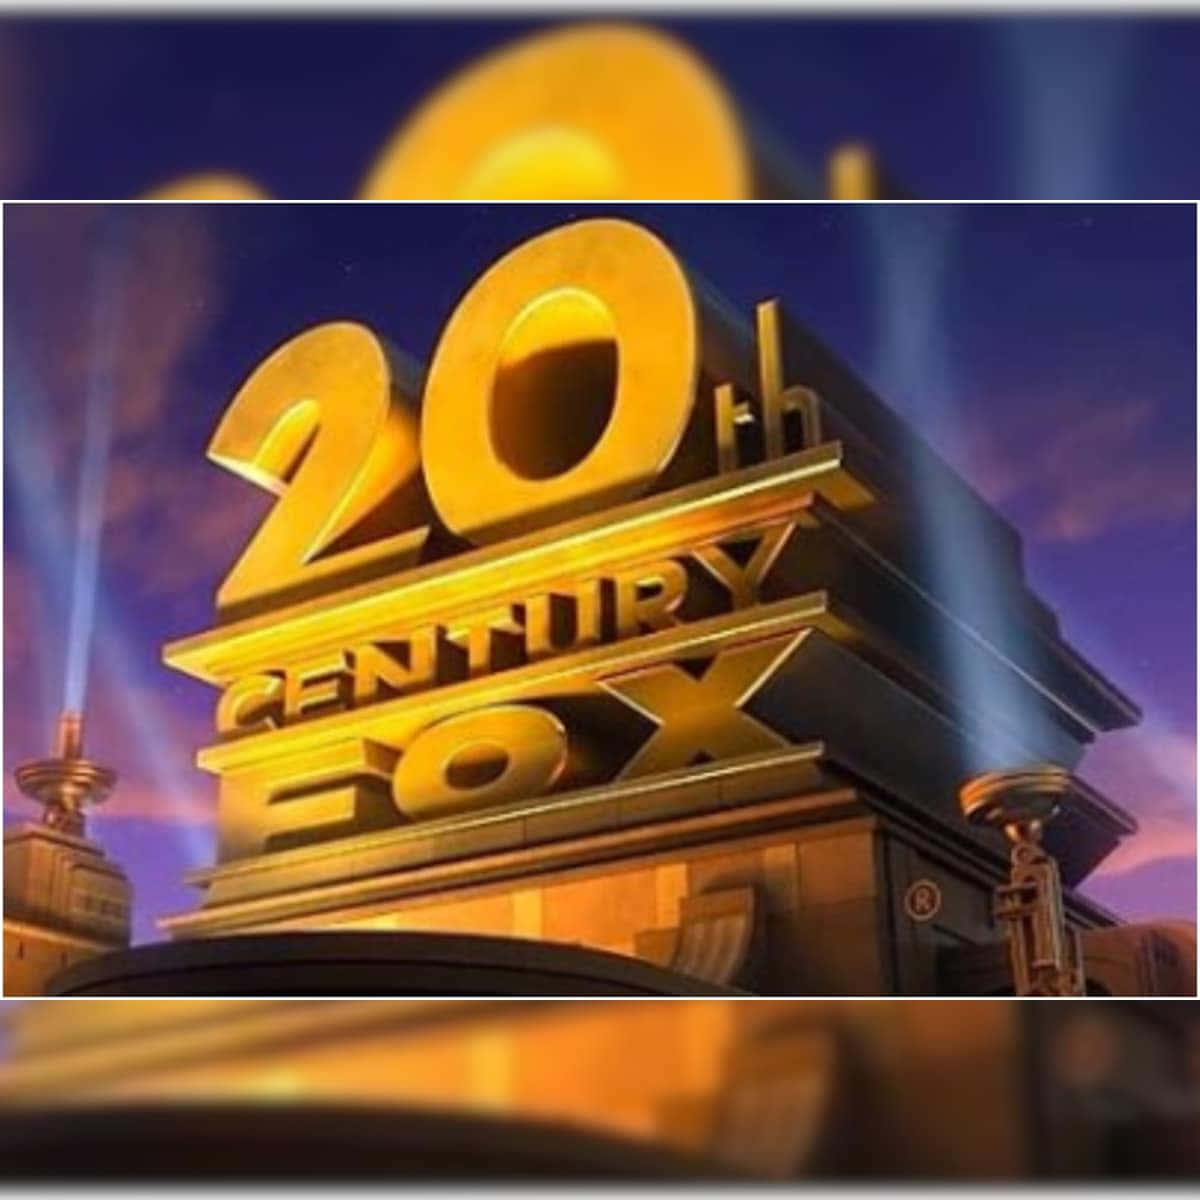 Logodella 20th Century Fox Con Luci Accese